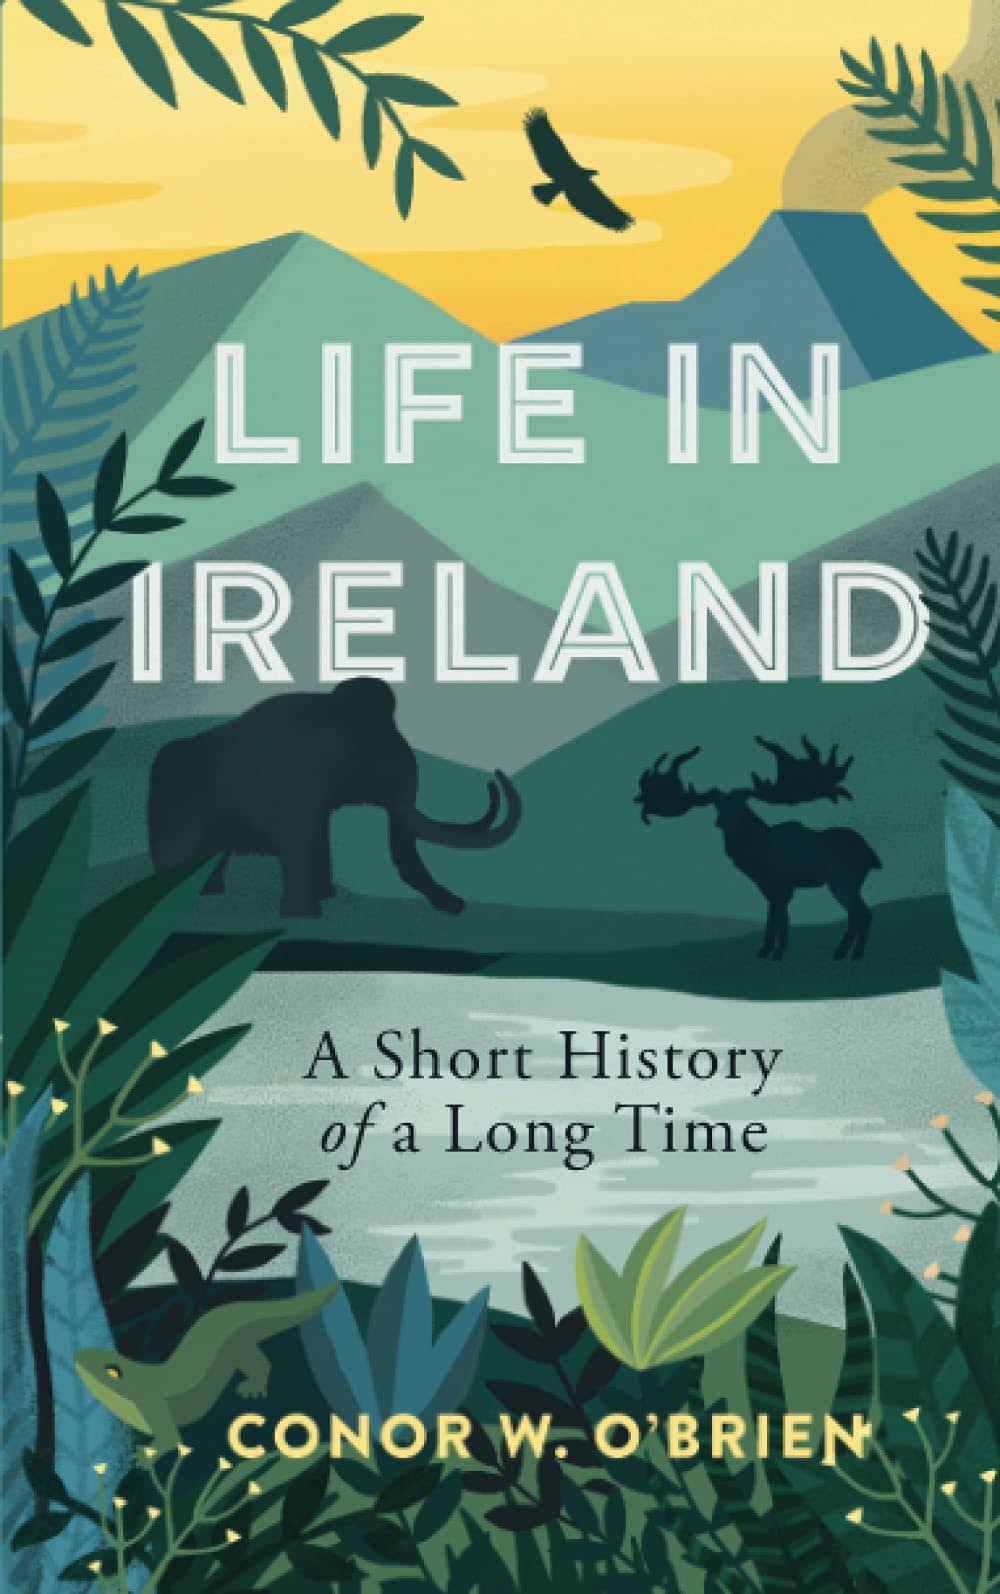 Life in Ireland by Conor O'Brien